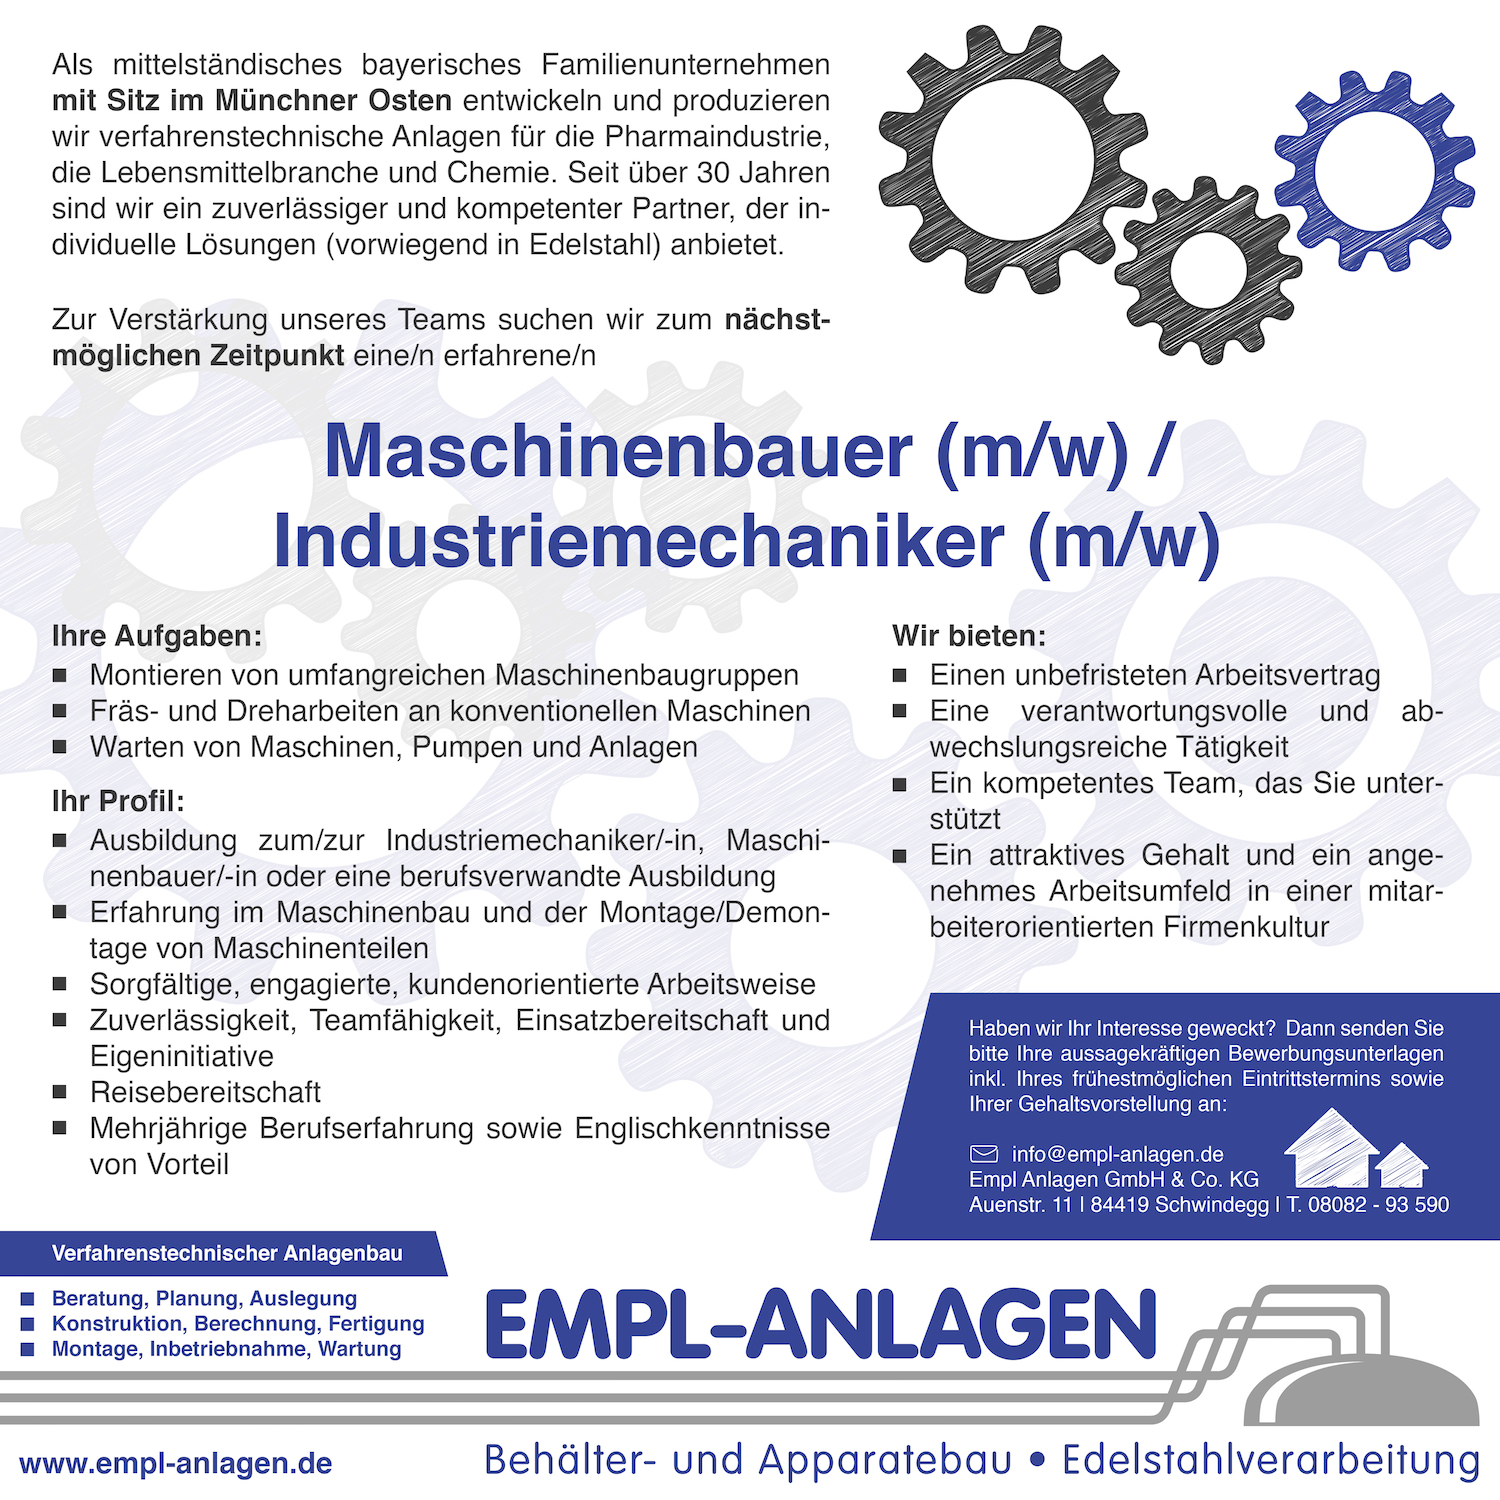 Empl-Anlagen_Maschinenbauer_Industriemechaniker